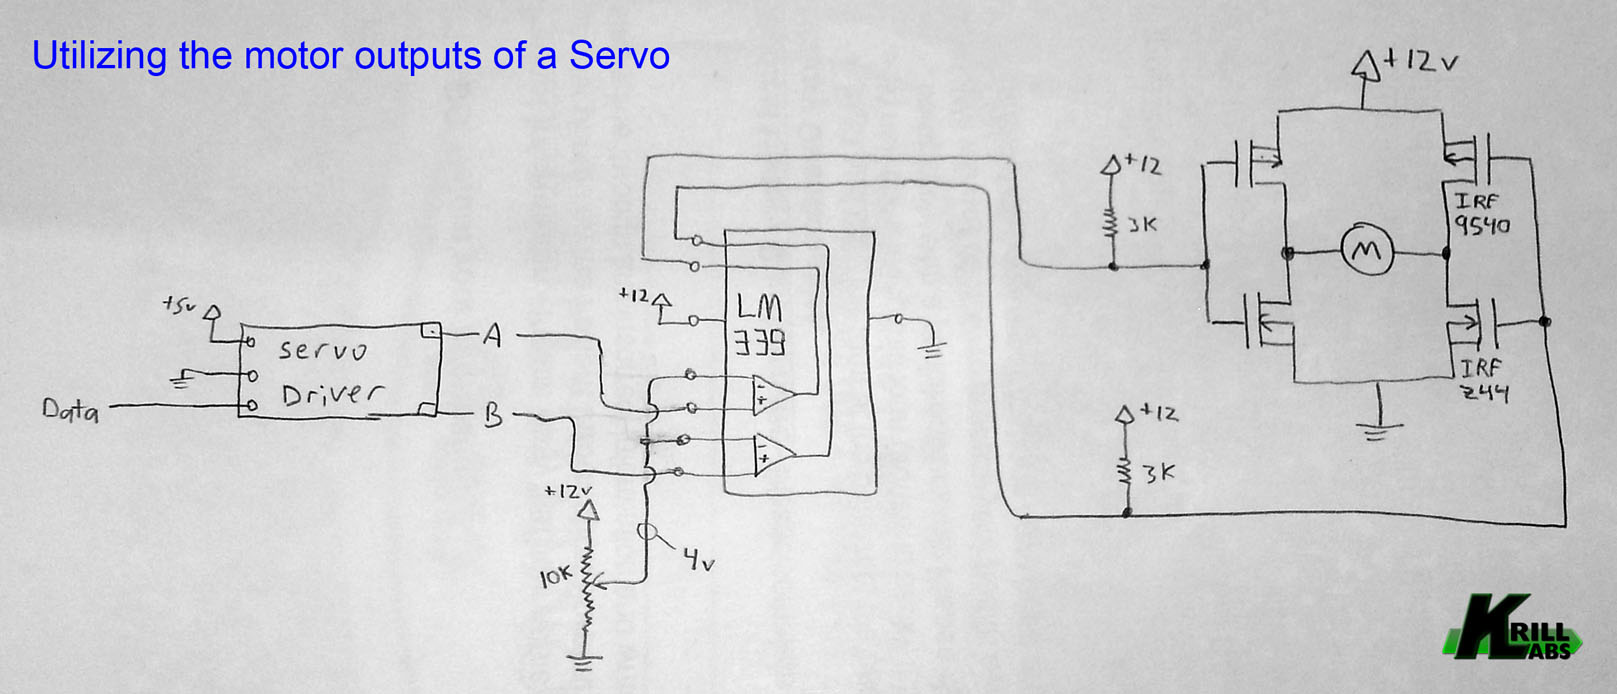 servo_outputs_utilized_for_motor.jpg